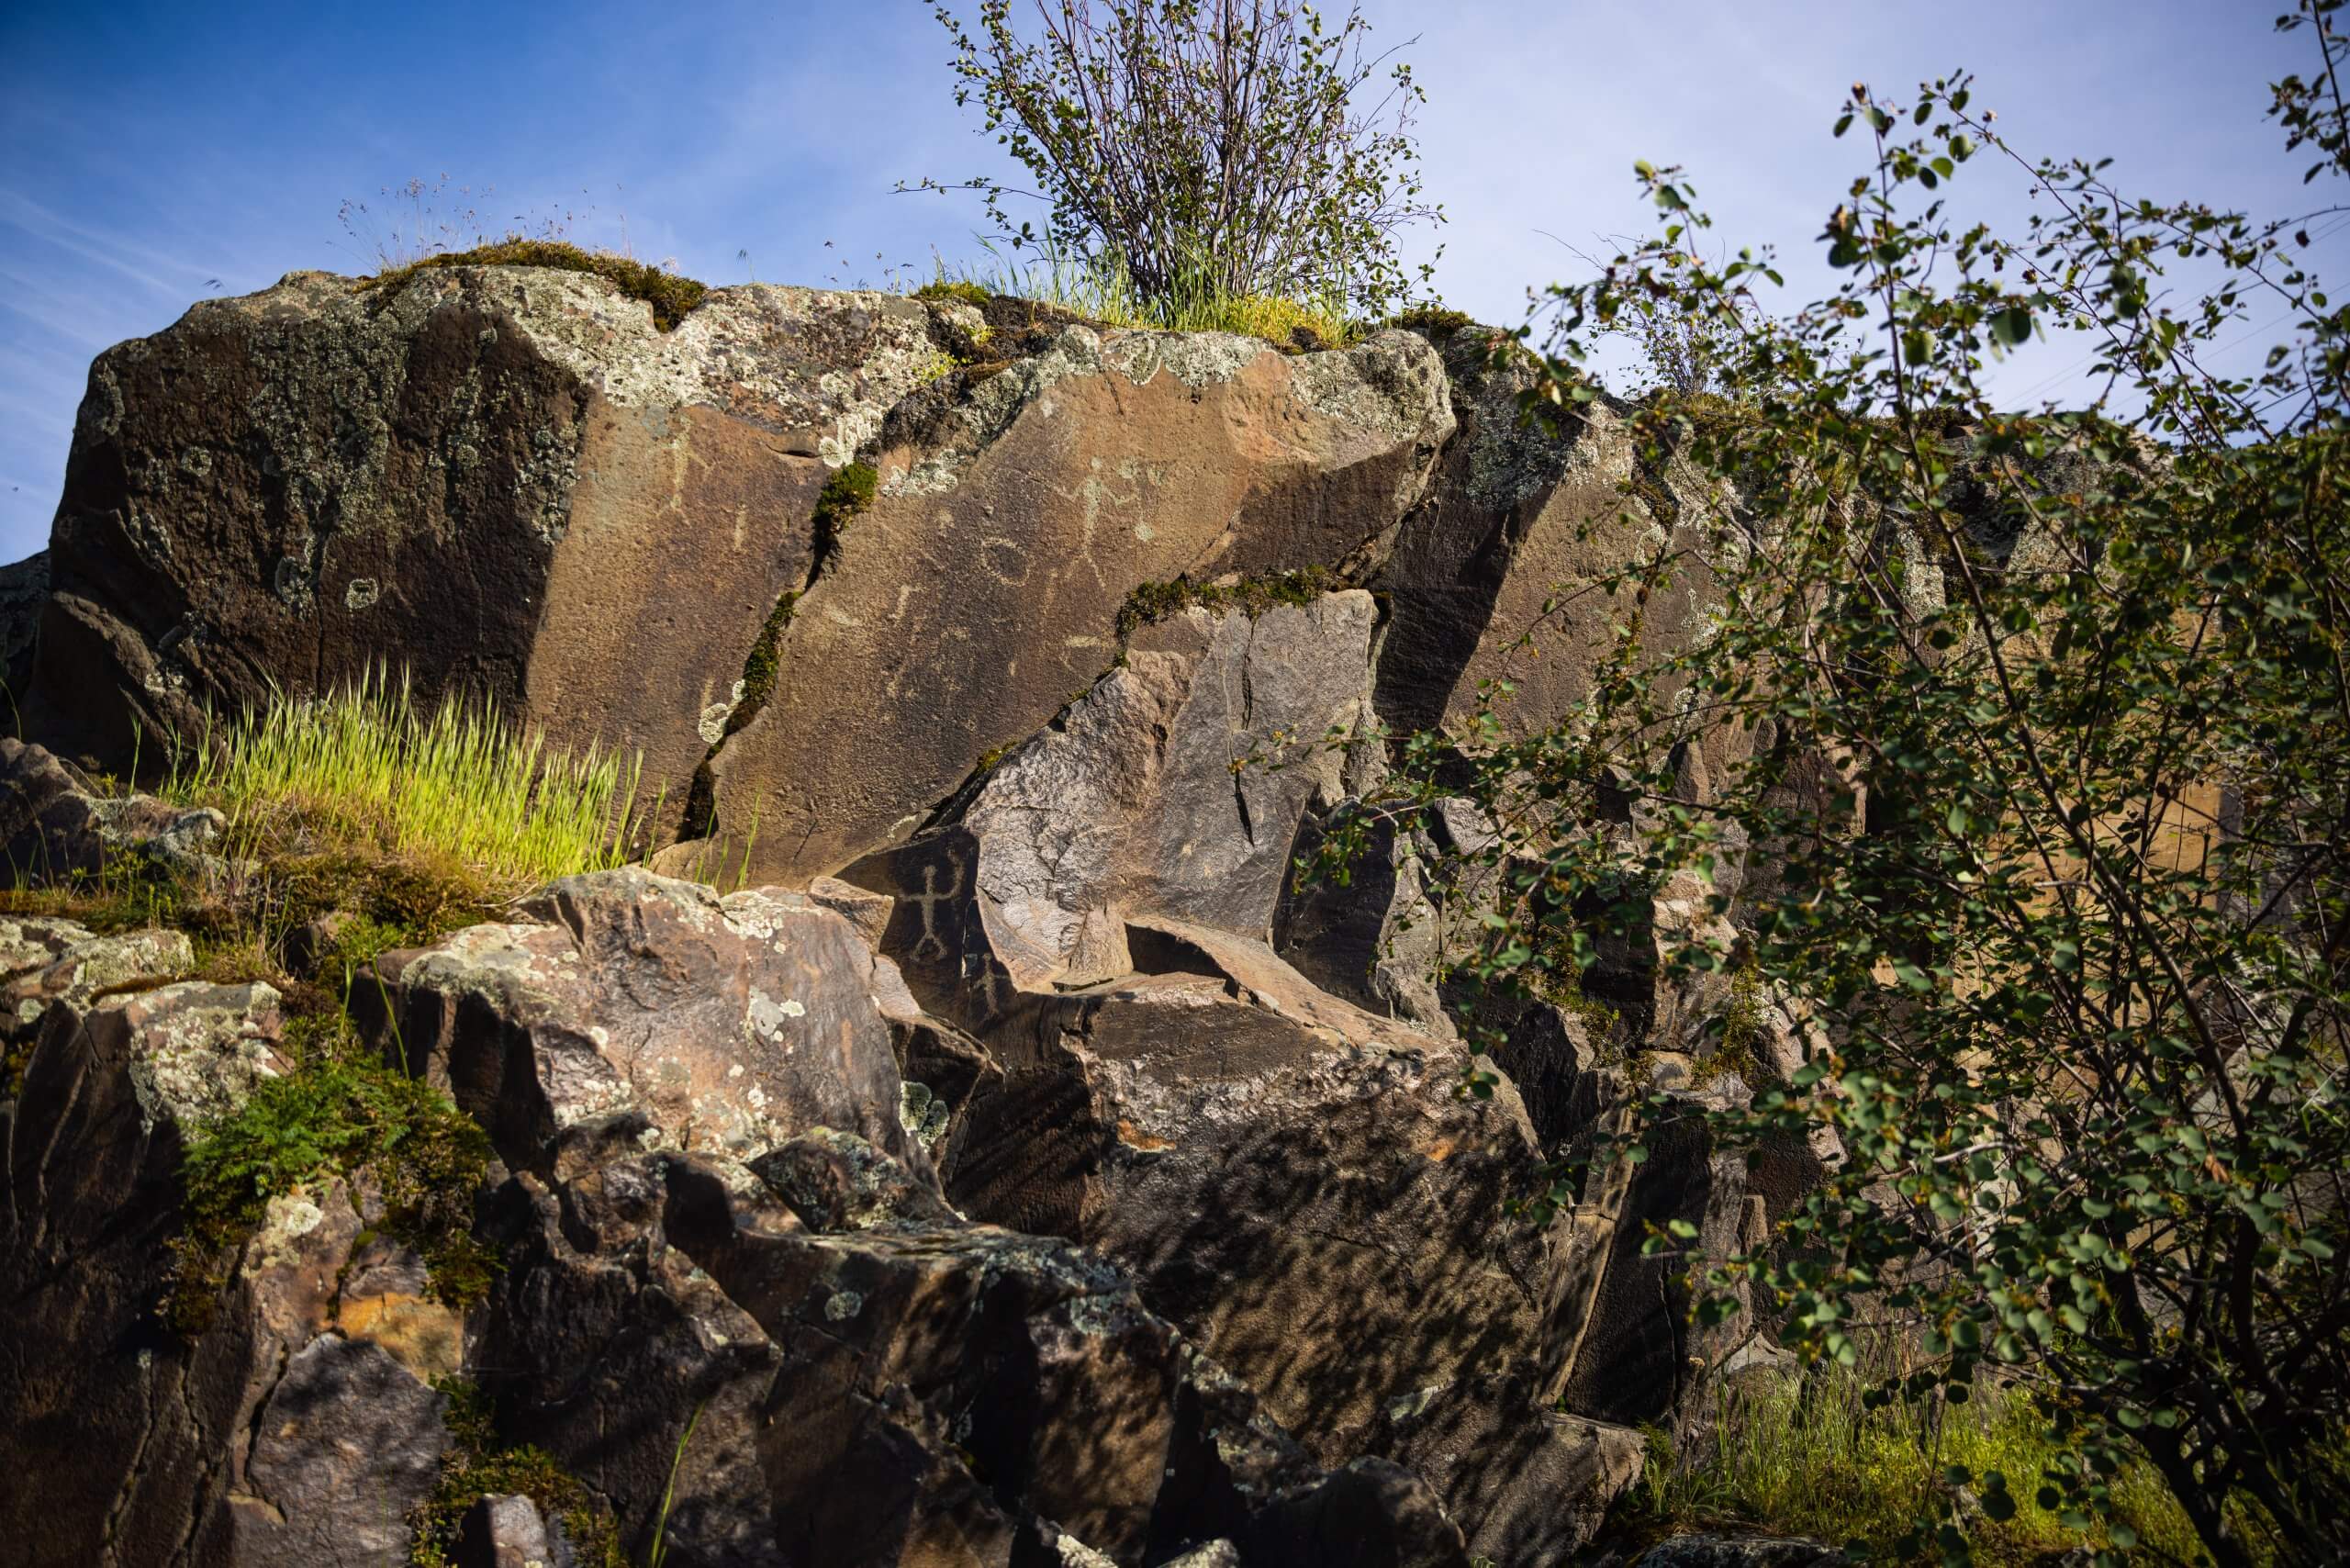 Petroglyphs on a boulder.